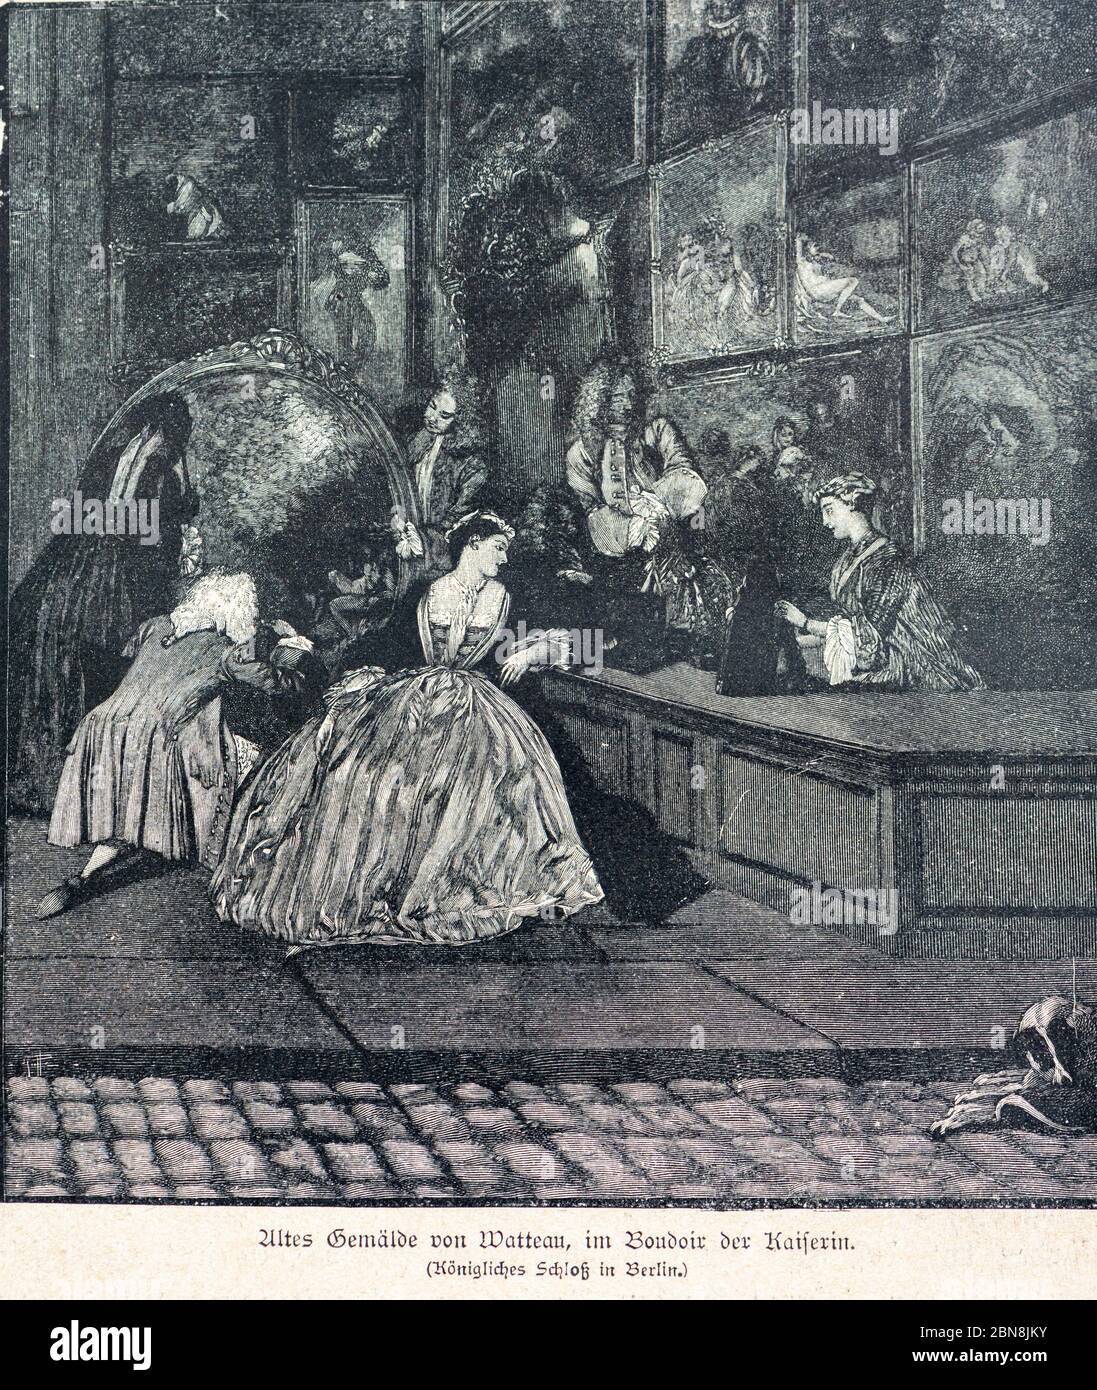 Illustration intitulée 'Altes Gemälde von Watteau, im Boudoir der Kaiserin' ou ancienne peinture de Watteau, dressing de l'impératrice', Berlin, Banque D'Images